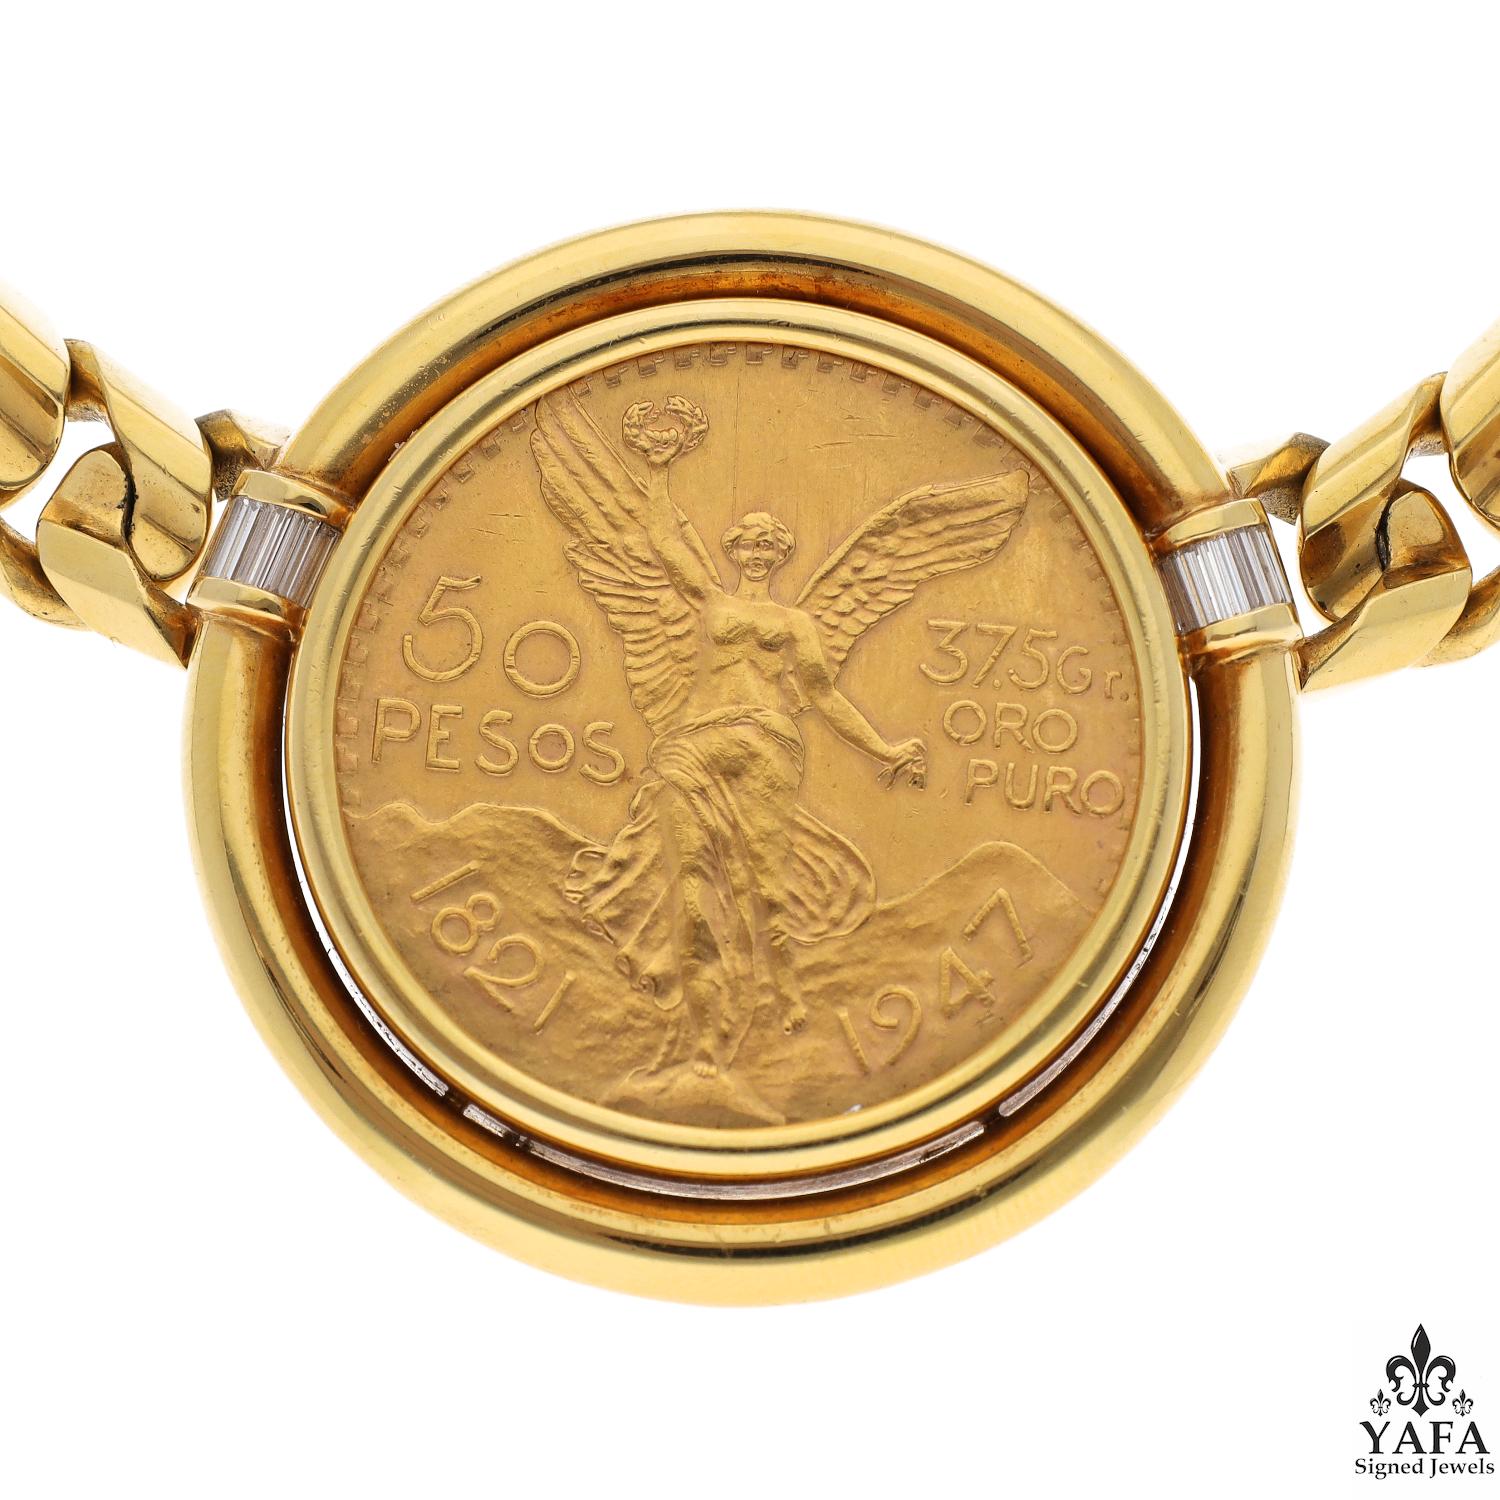 Bvlgari Rome Vintage Coins Of The World Diamond Italian Yellow Gold Necklace From Our Signed Jewels Vintage Collection.

Bulgari Rome a lancé la tendance dans les années 1970 en montant des pièces de monnaie anciennes et modernes dans des bijoux en